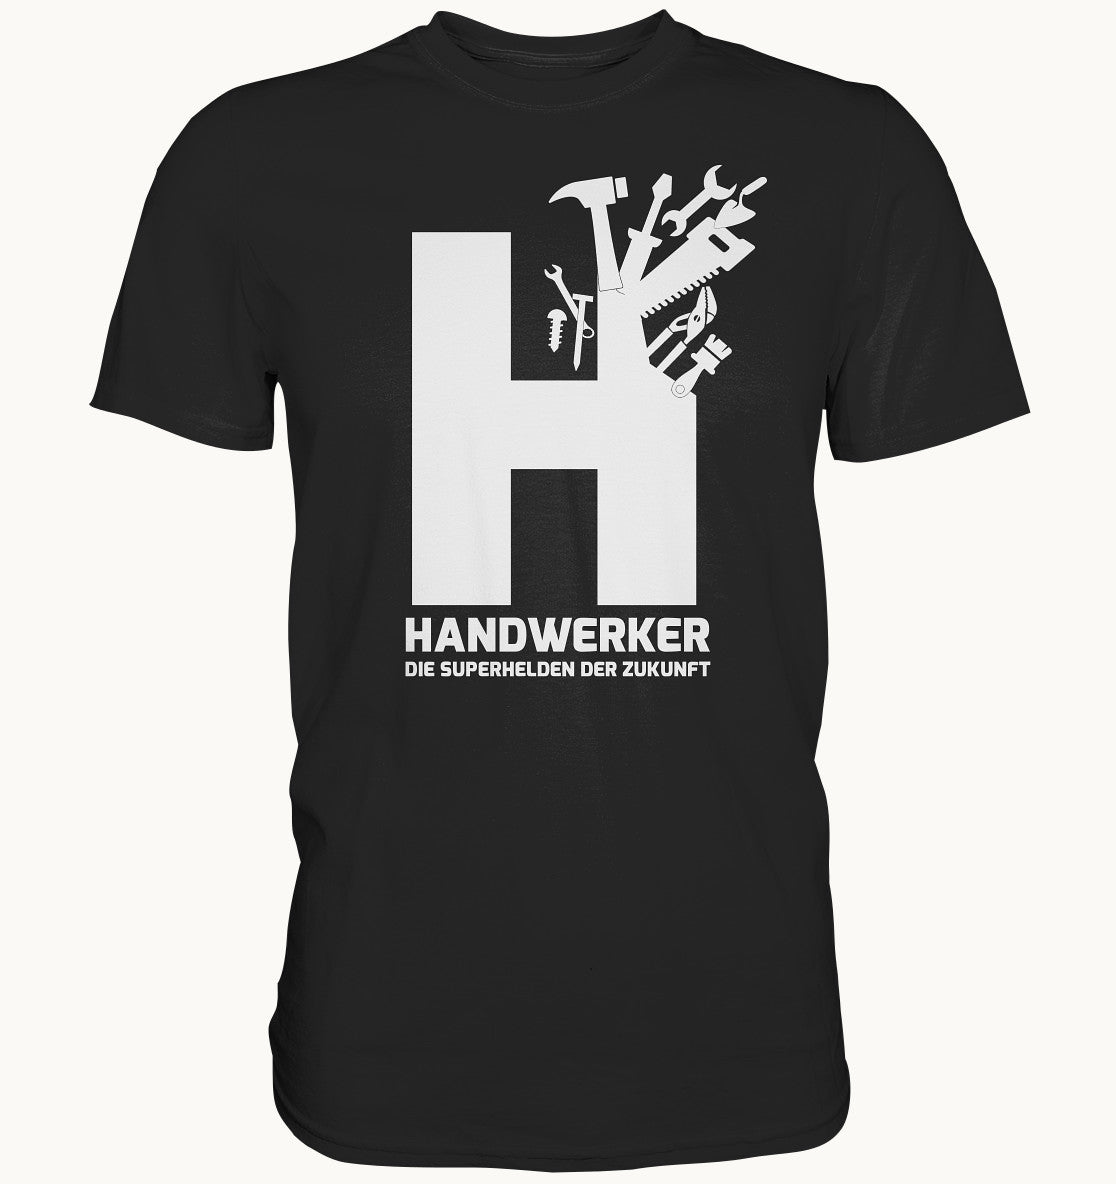 Handwerker - Superhelden der Zukunft - Premium Shirt